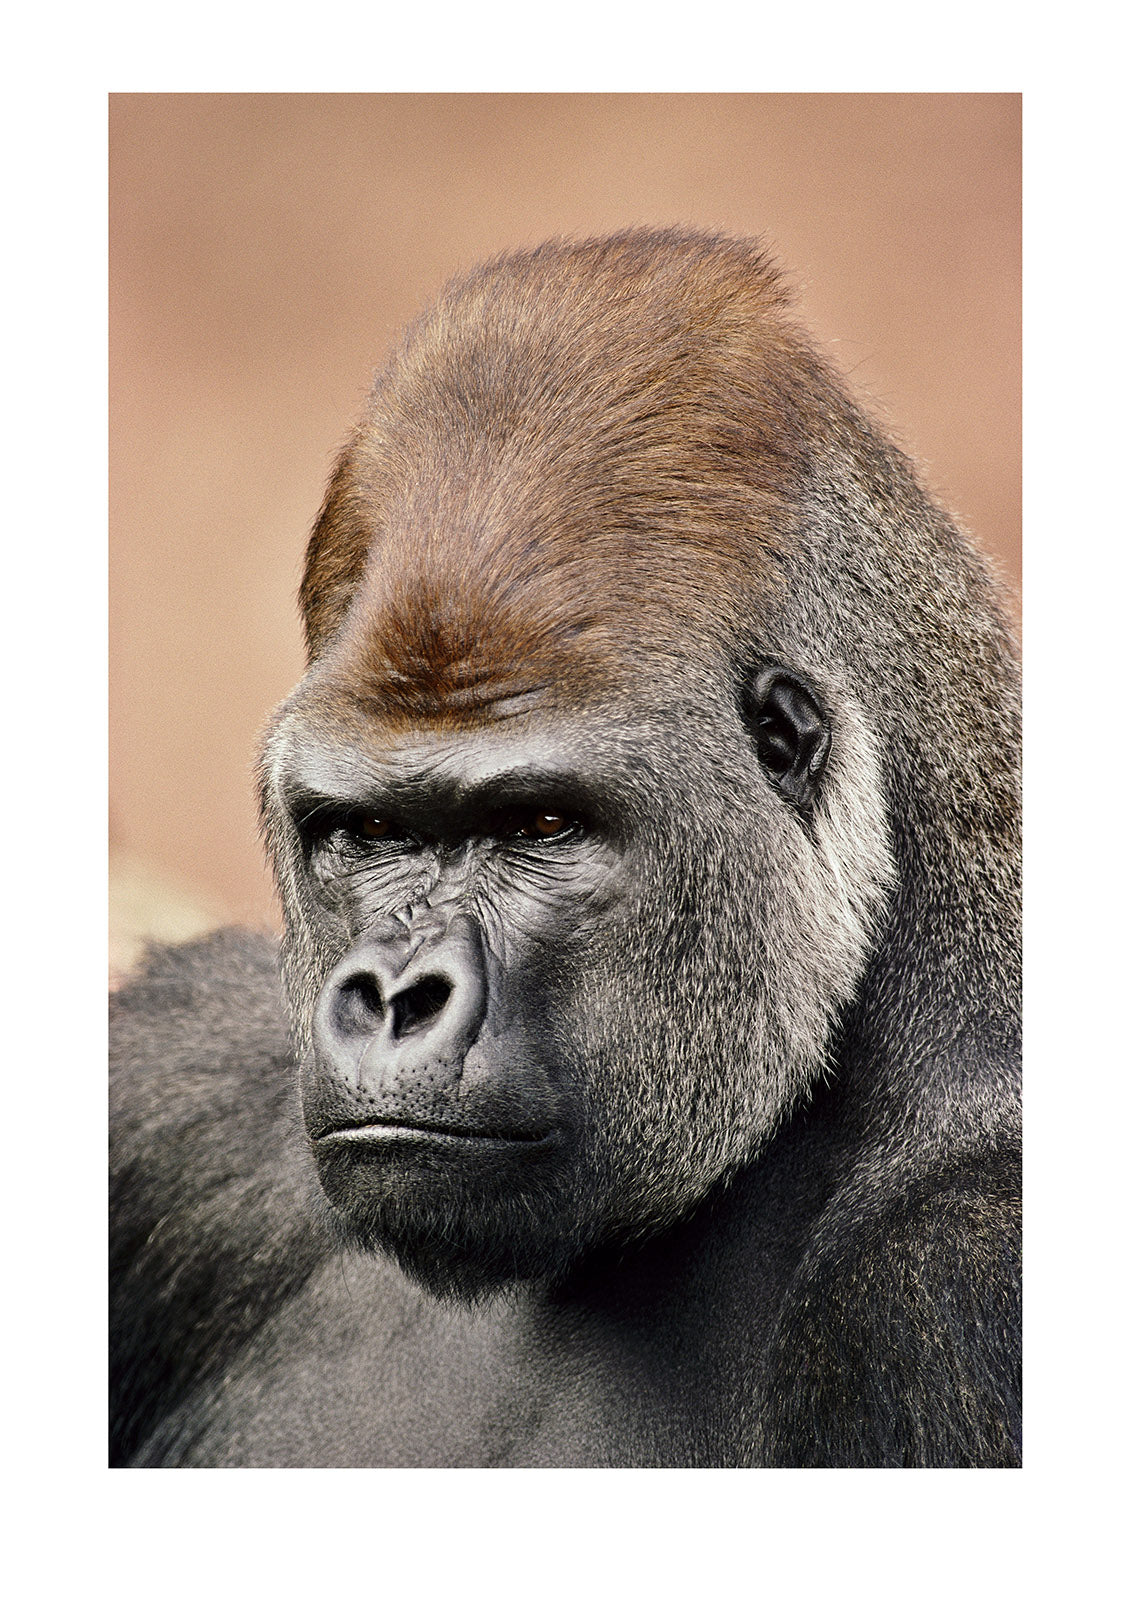 A portrait of a western lowland gorilla silverback. Melbourne Zoo, Melbourne, Victoria, Australia